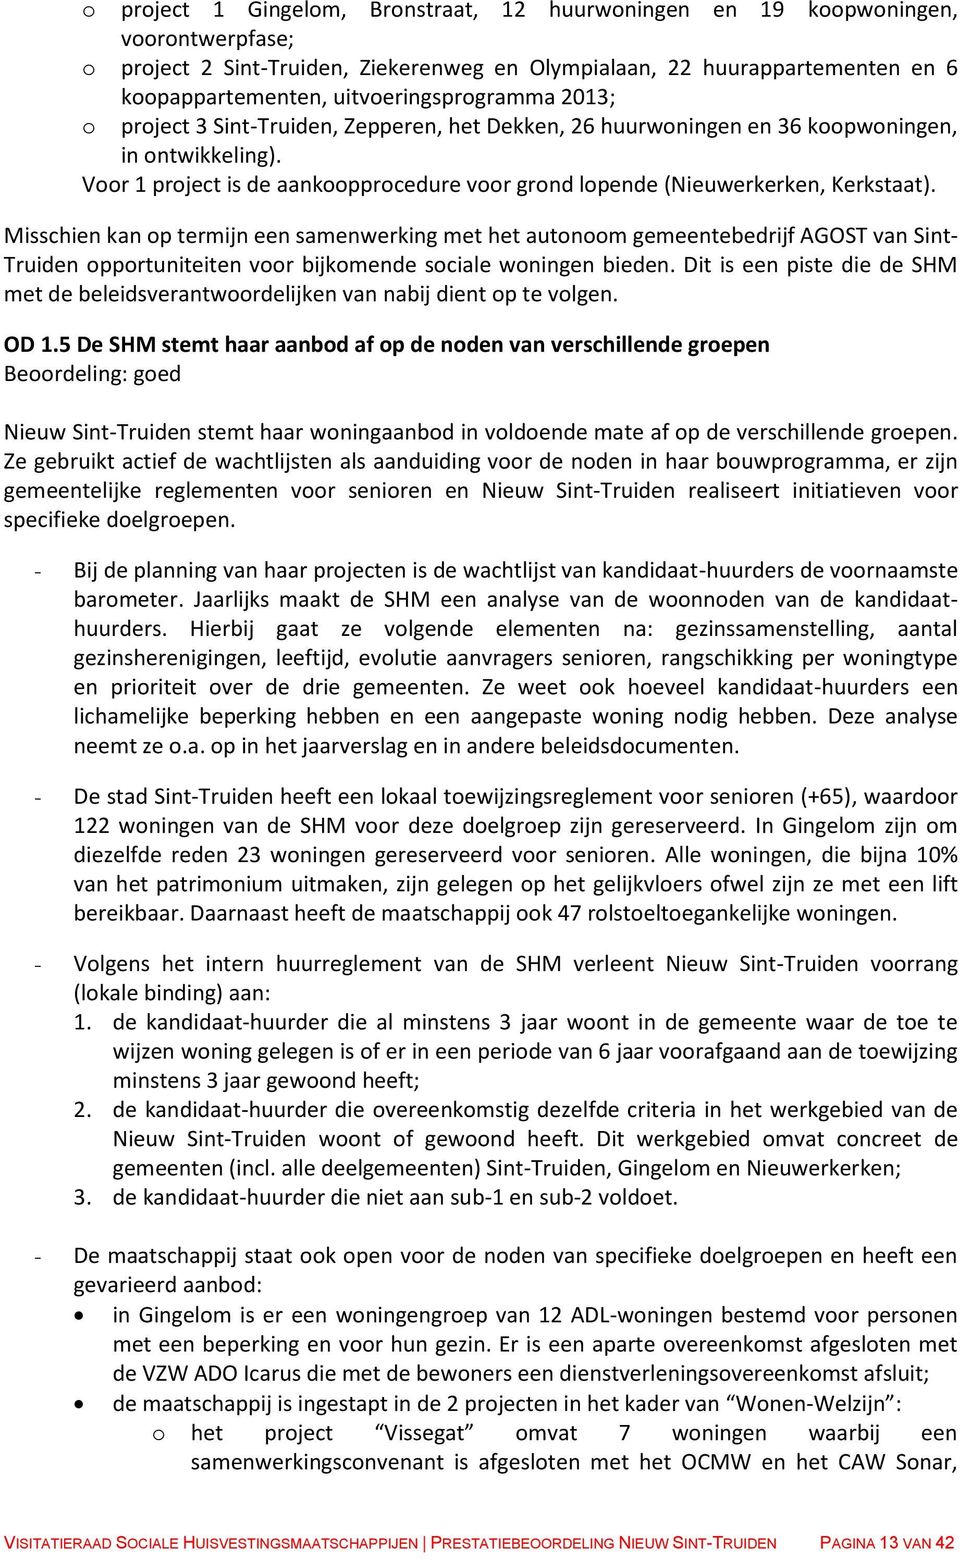 Voor 1 project is de aankoopprocedure voor grond lopende (Nieuwerkerken, Kerkstaat).